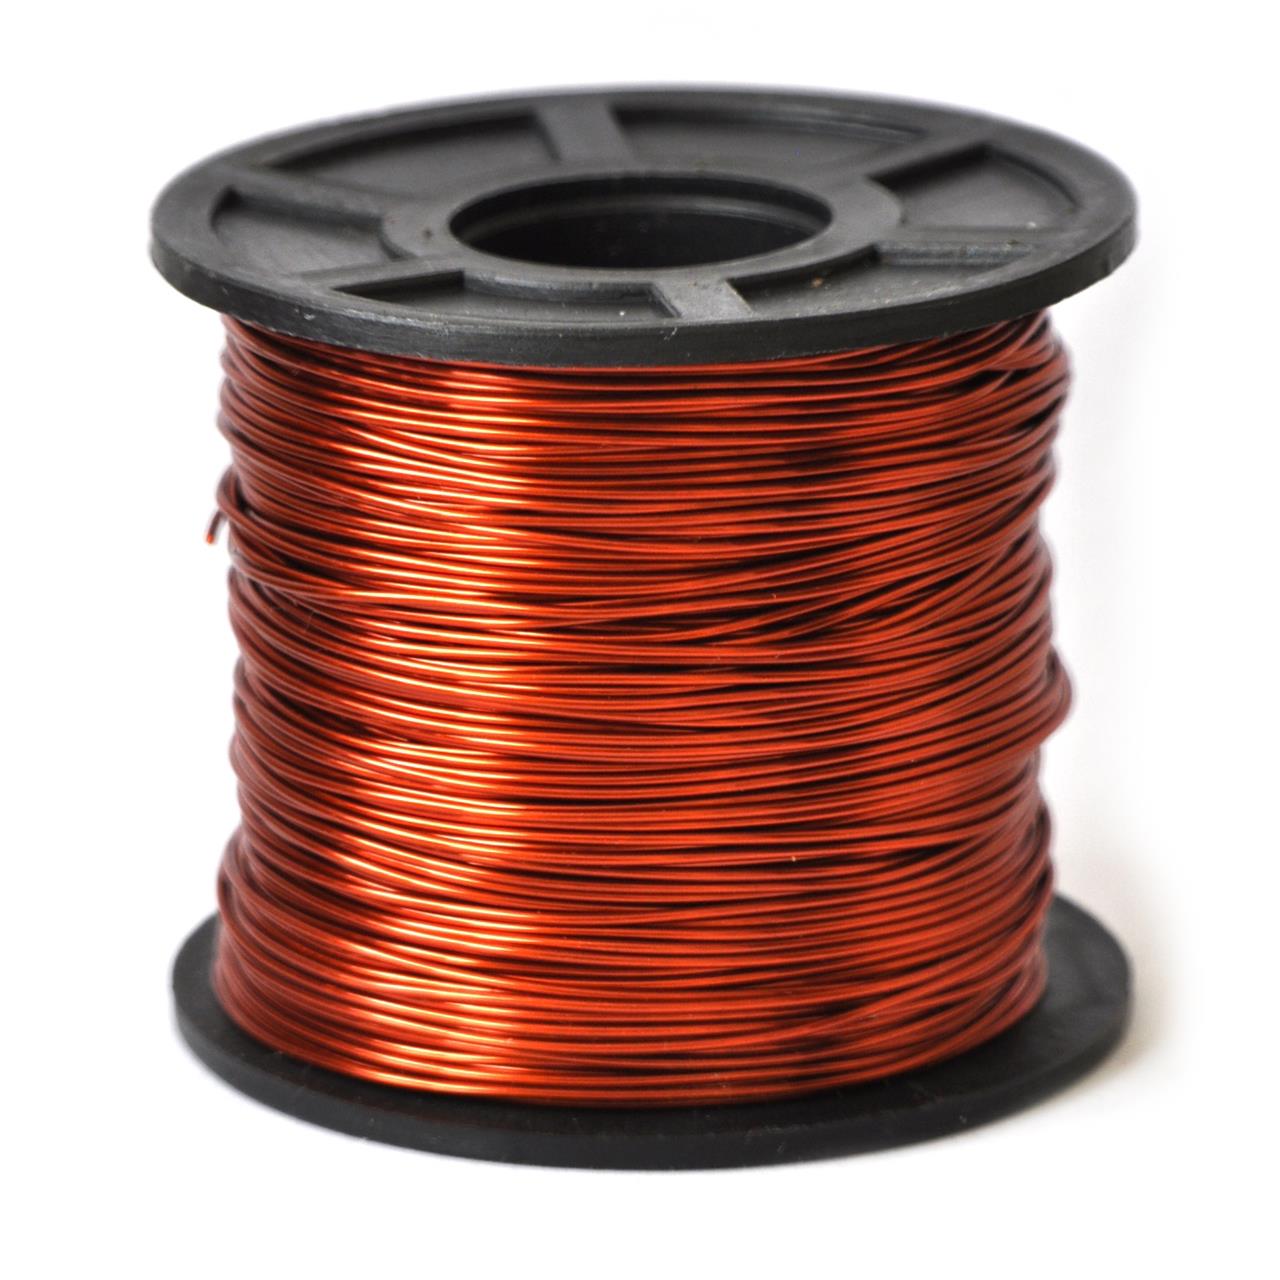 Fios de cobre esmaltados para bobinas, transformadores e indutores - Fio 20 AWG 500g